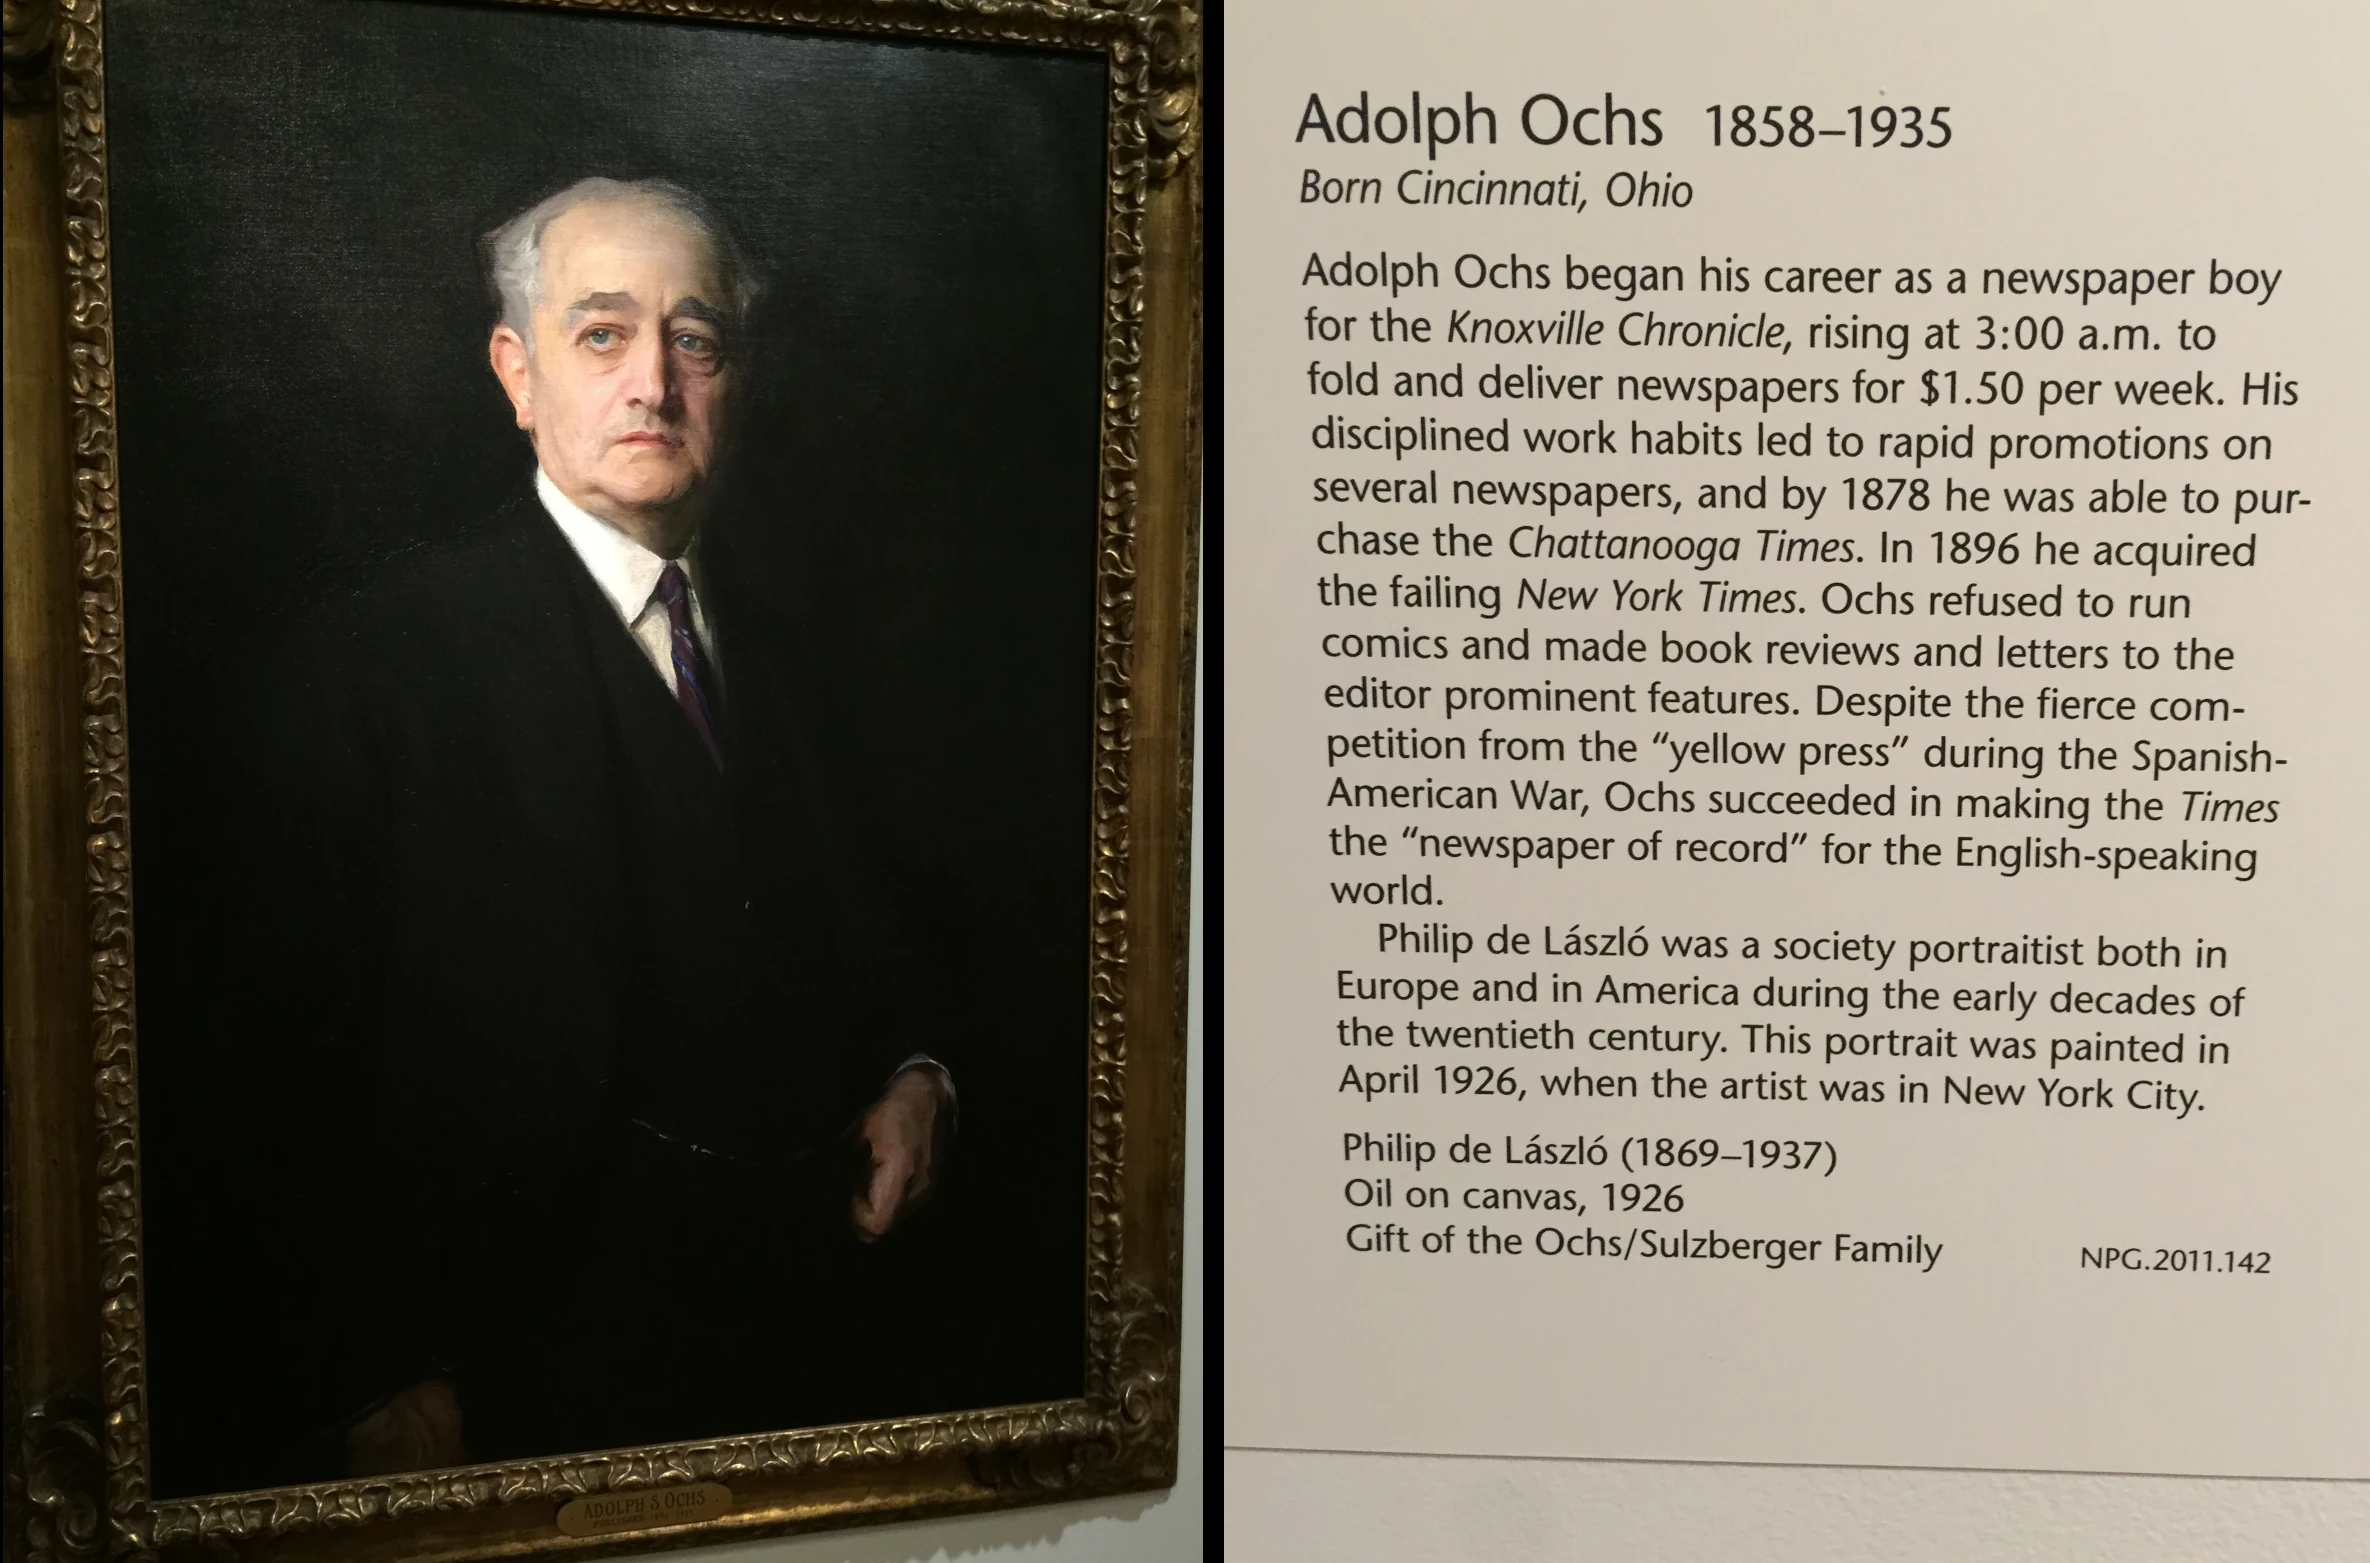 A portrait of Adolph Ochs